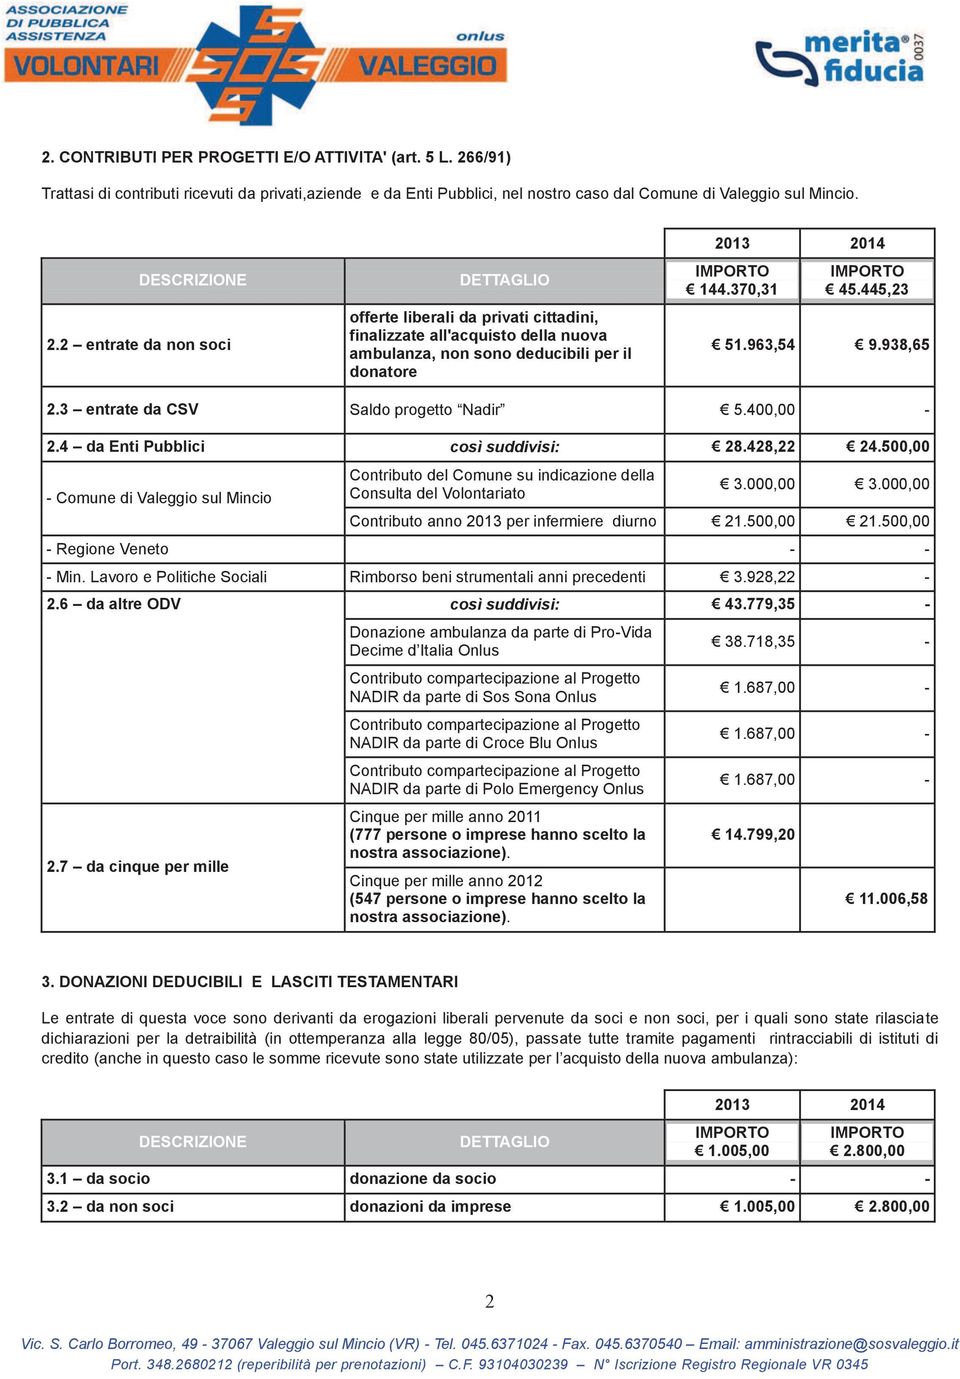 2 entrate da non soci offerte liberali da privati cittadini, finalizzate all'acquisto della nuova ambulanza, non sono deducibili per il donatore 144.370,31 45.445,23 51.963,54 9.938,65 2.